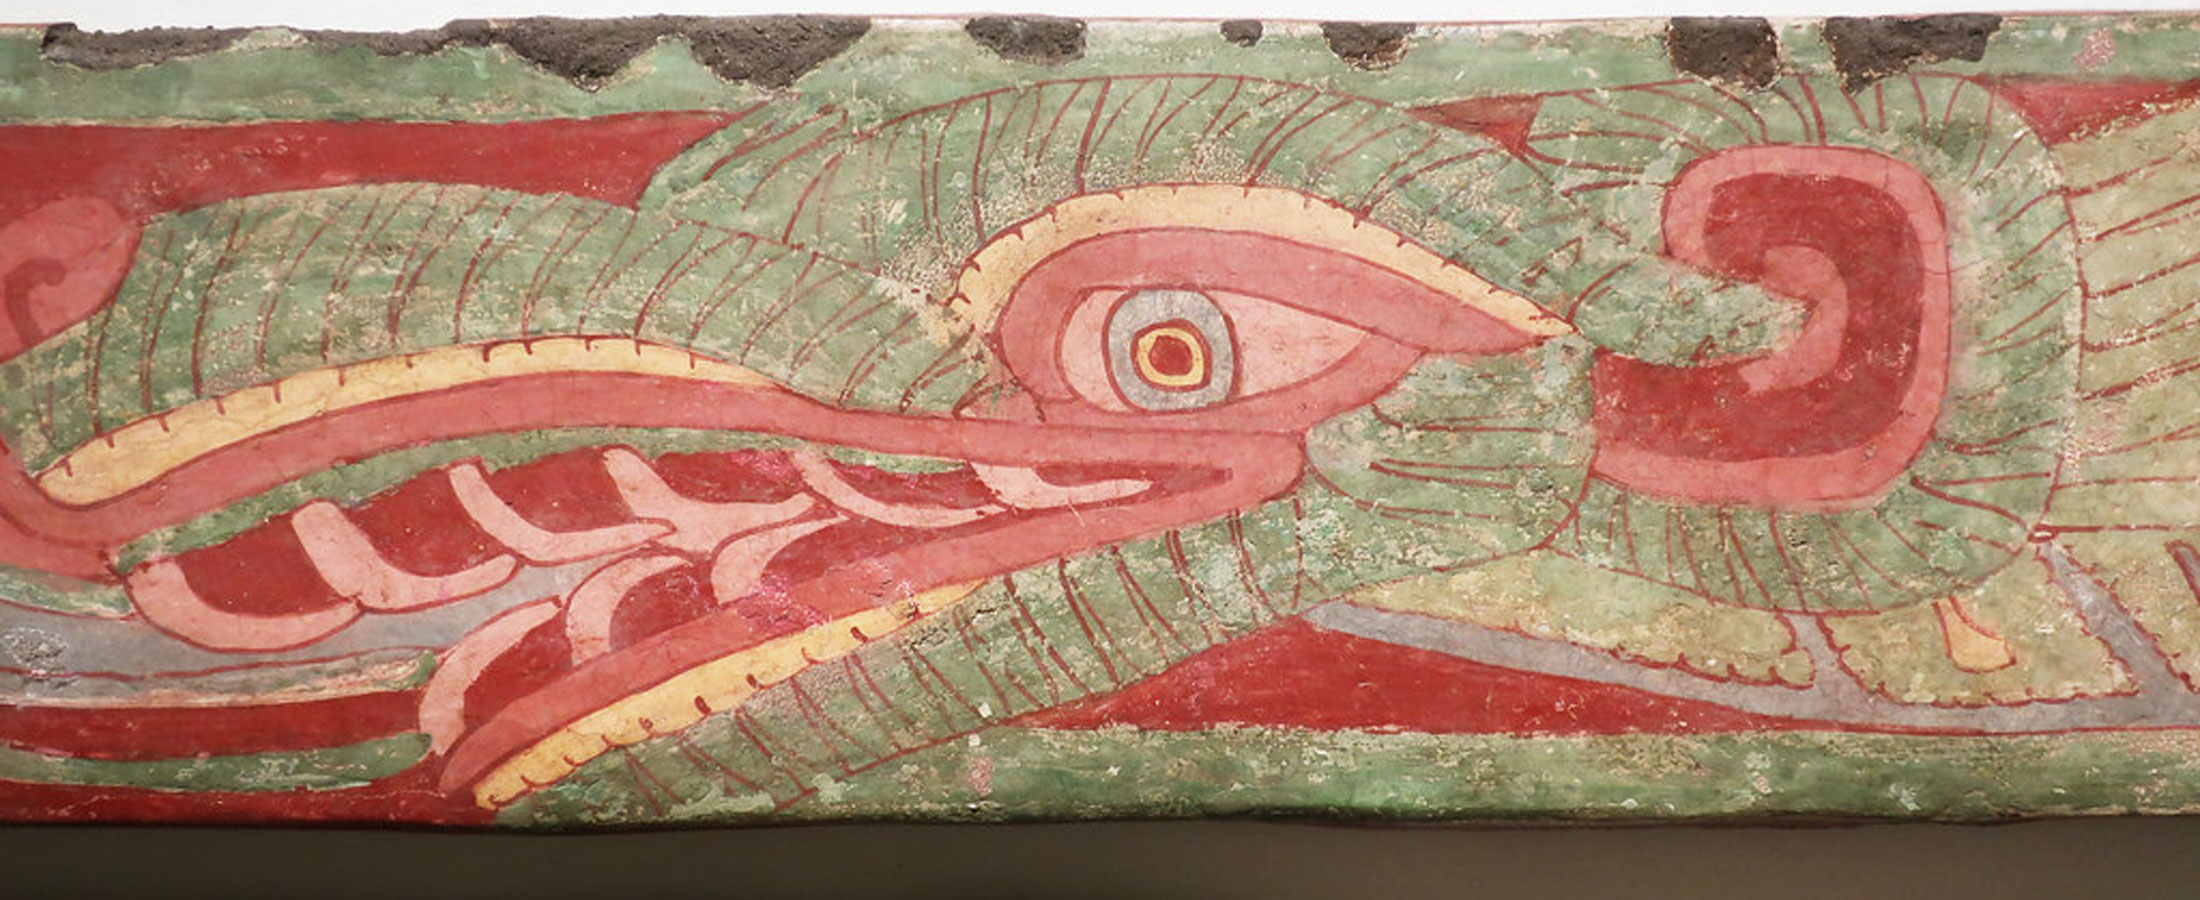 Serpiente emplumada de Techinantitla, Teotihuacán